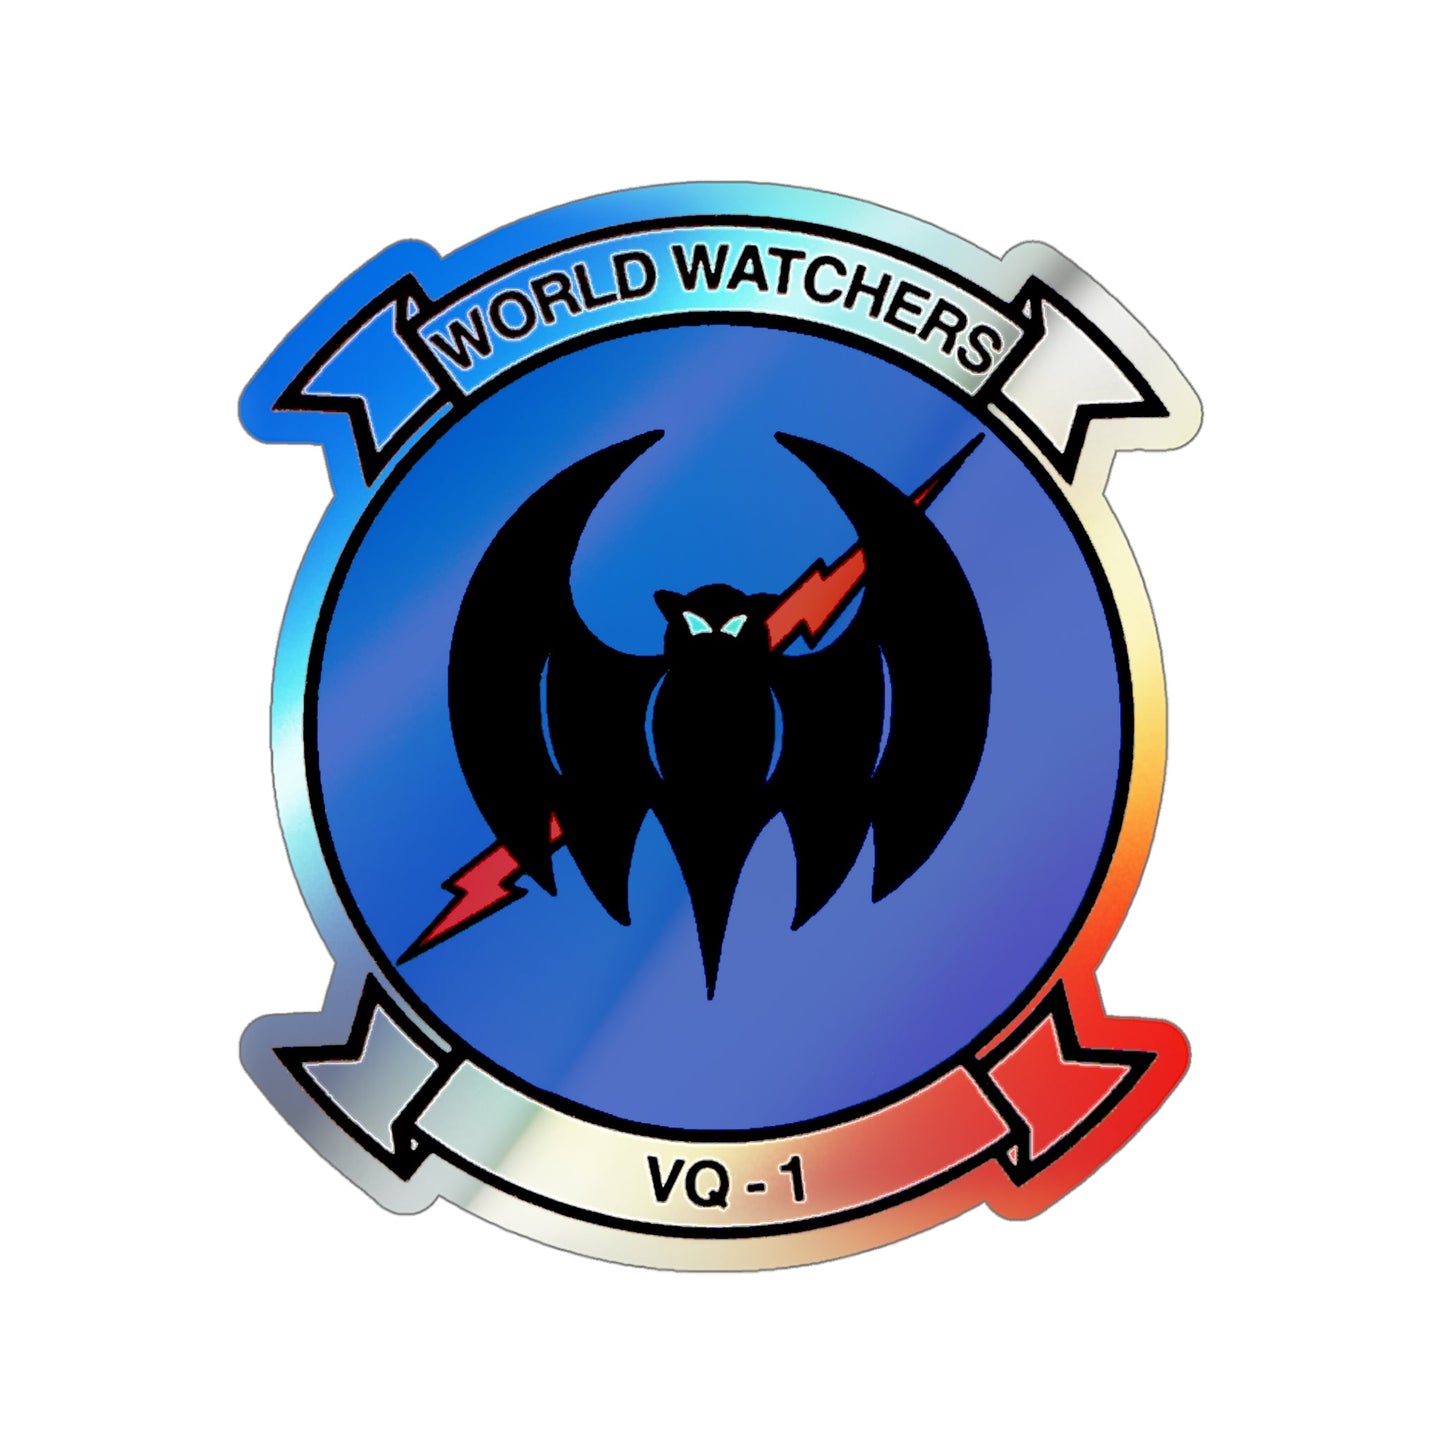 VQ 1 World Watchers v2 (U.S. Navy) Holographic STICKER Die-Cut Vinyl Decal-5 Inch-The Sticker Space